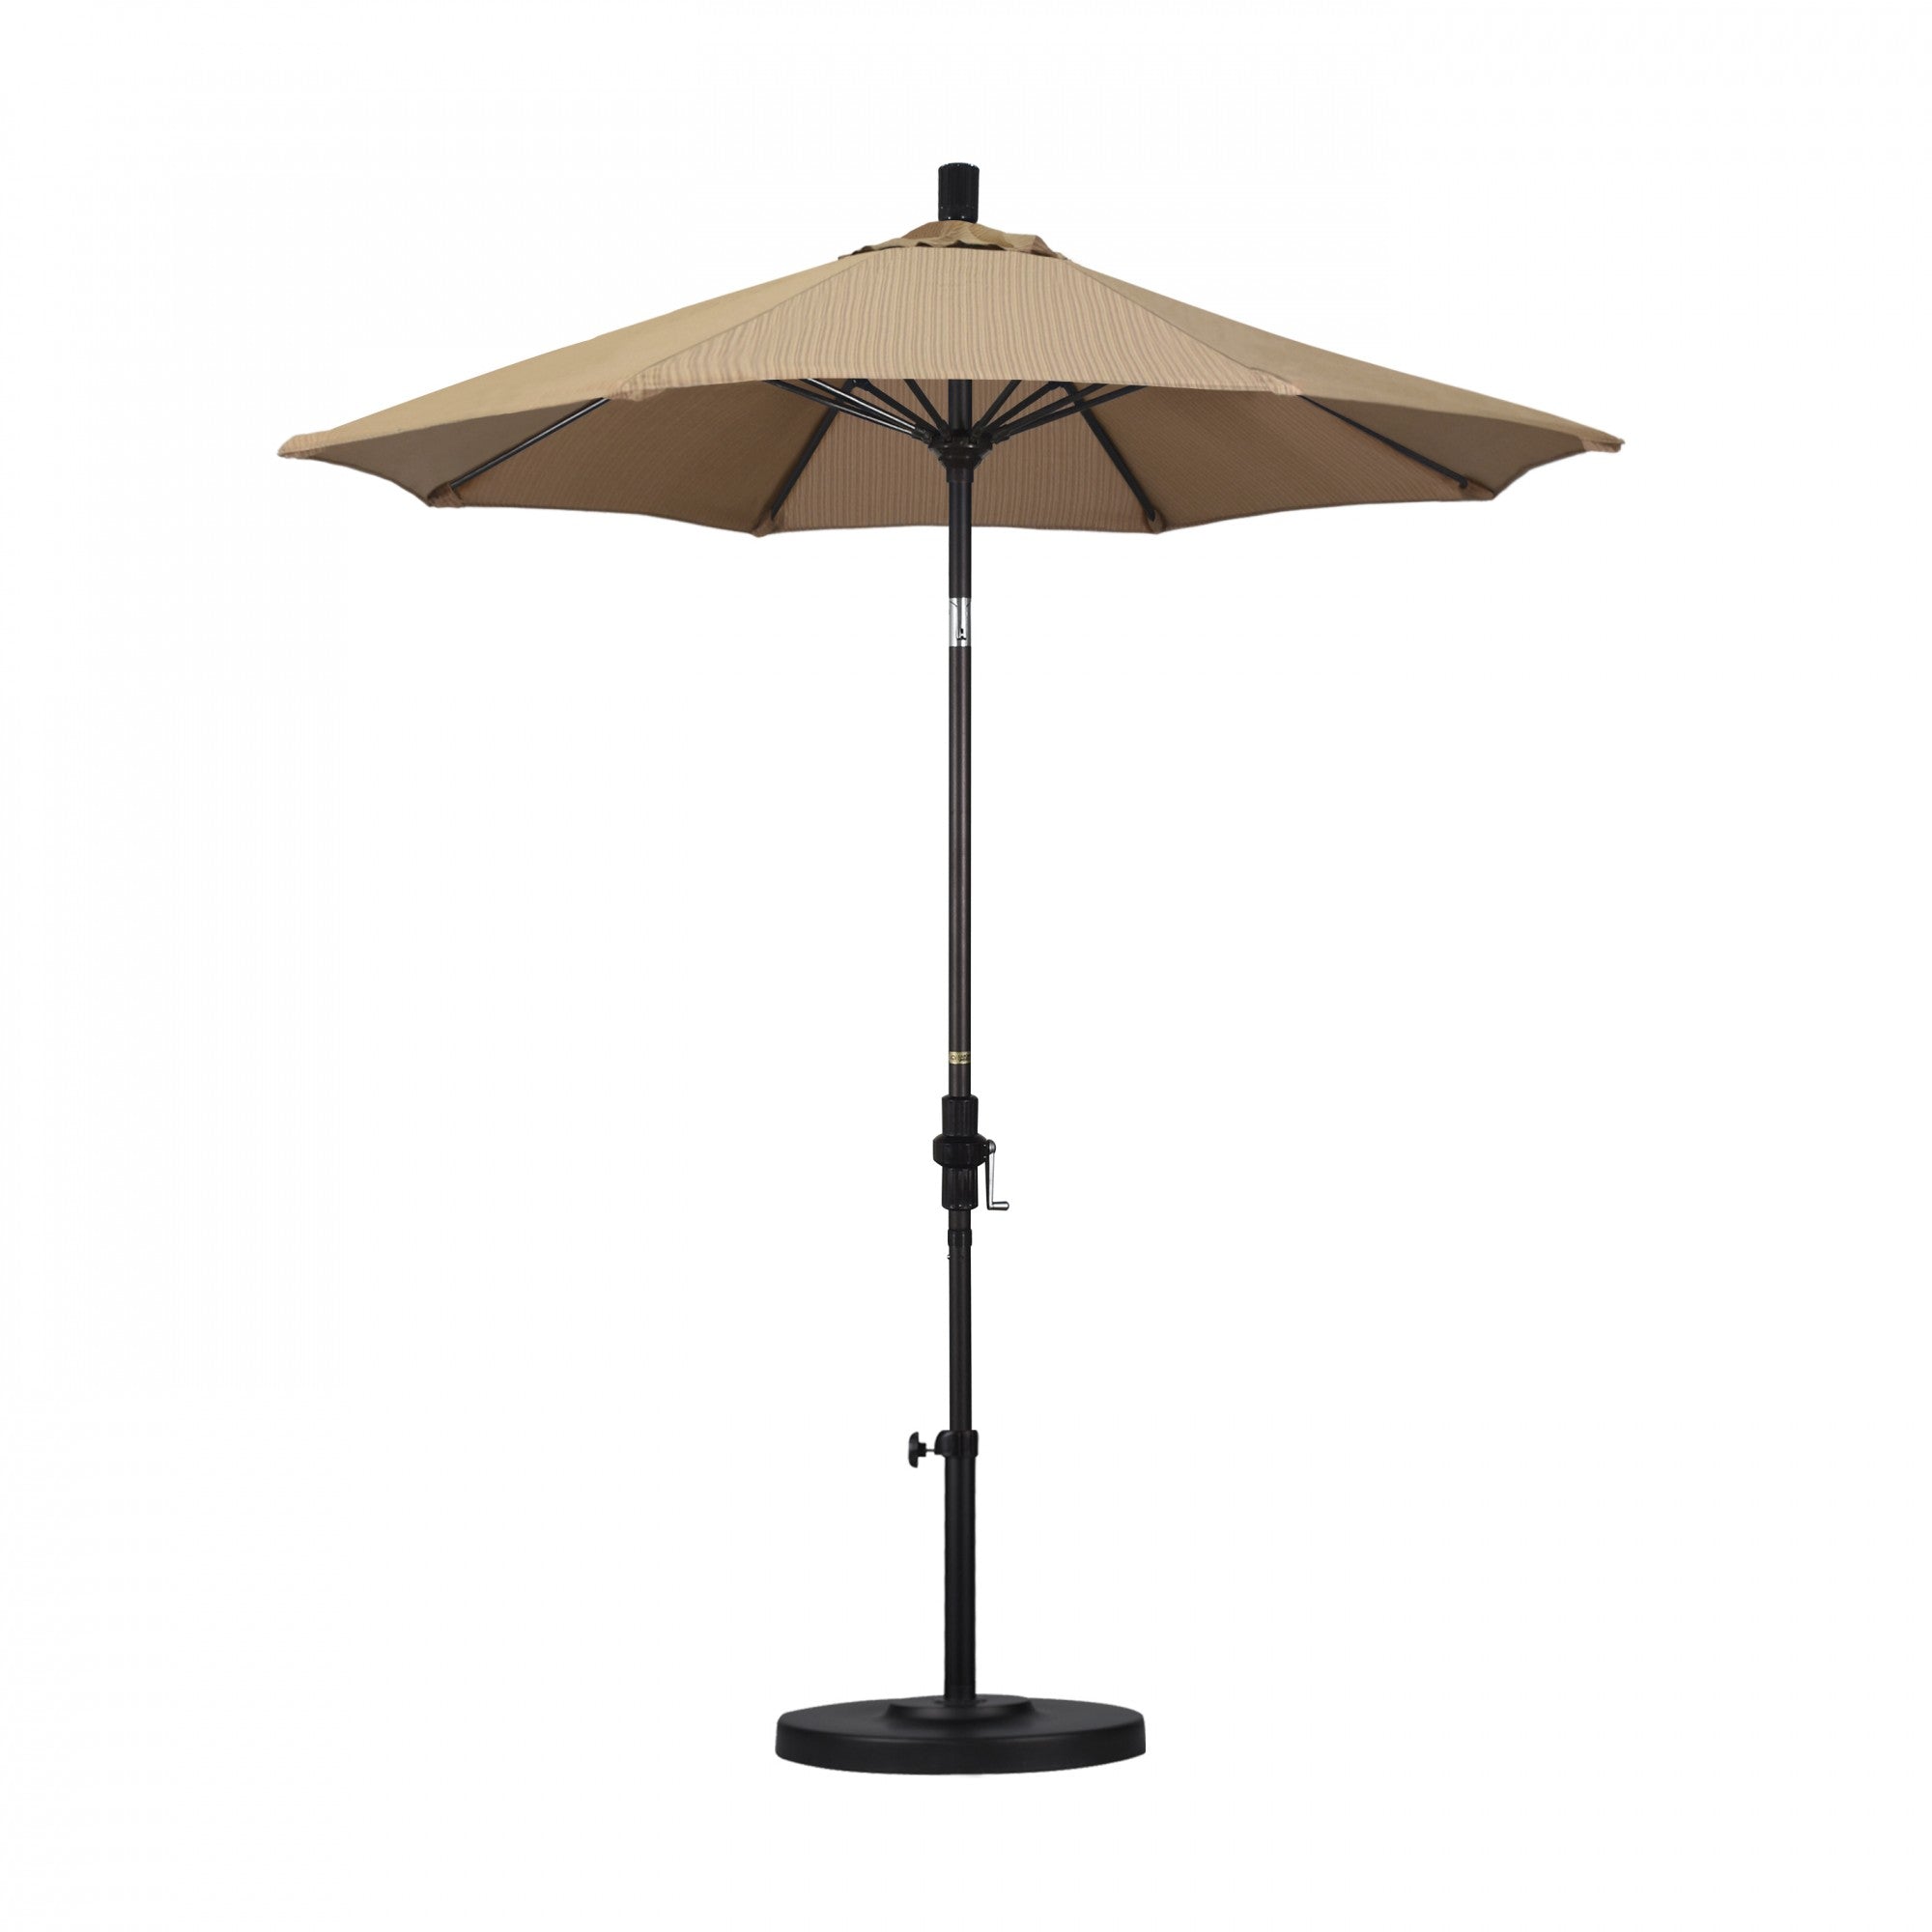 California Umbrella - 7.5' - Patio Umbrella Umbrella - Aluminum Pole - Terrace Sequoia - Olefin - GSCUF758117-FD10